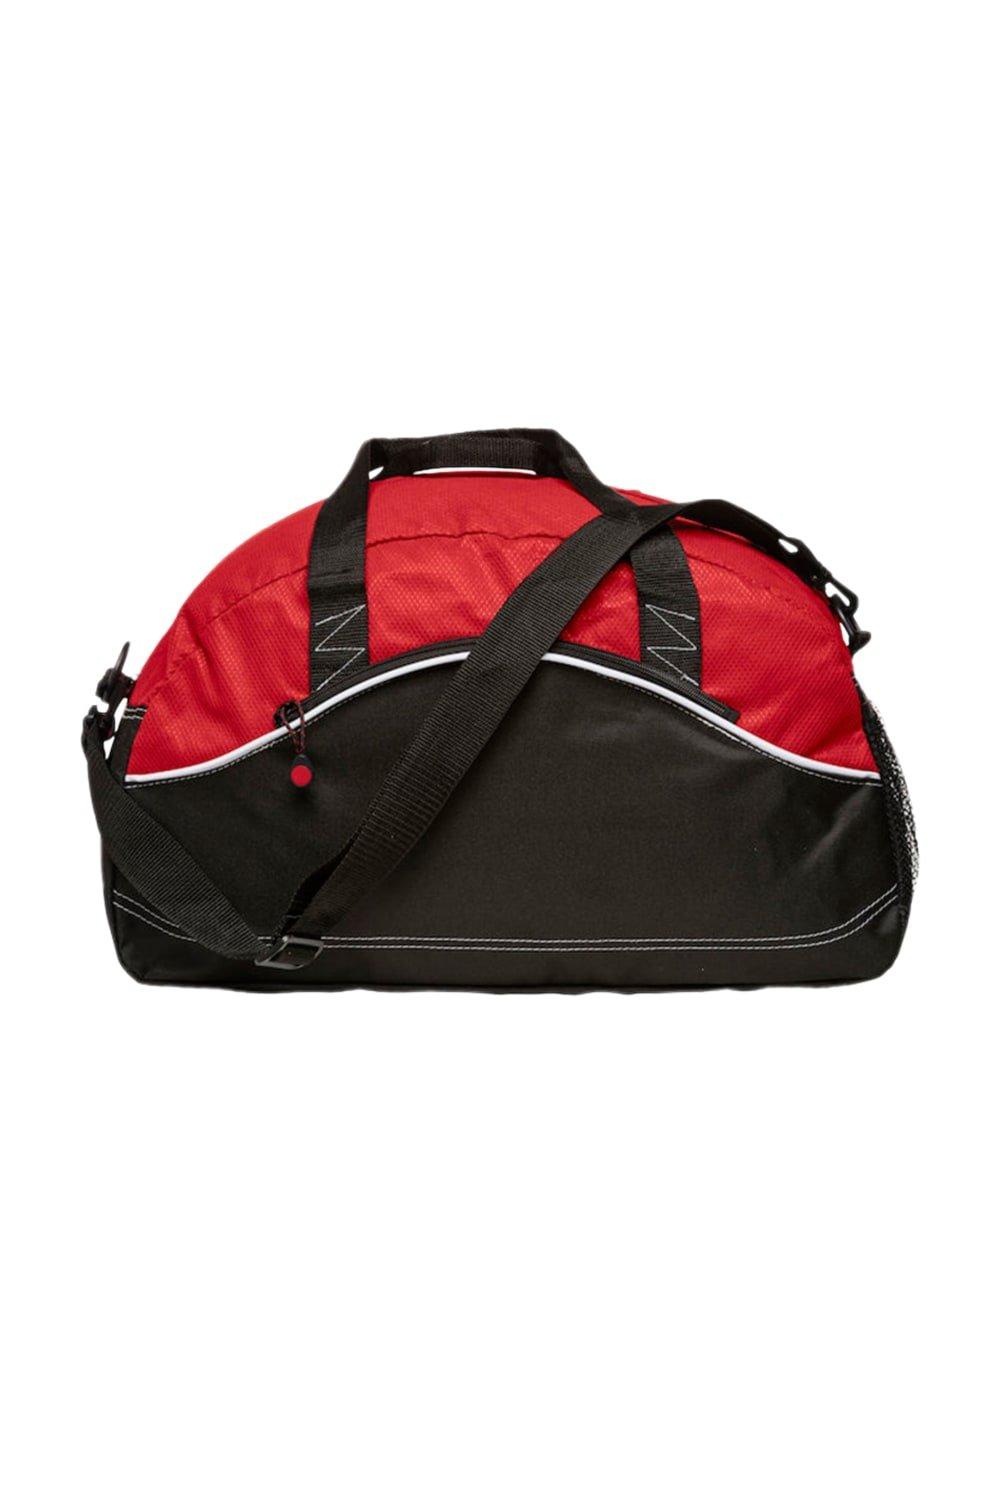 Базовая спортивная сумка Clique, красный базовая спортивная сумка clique синий